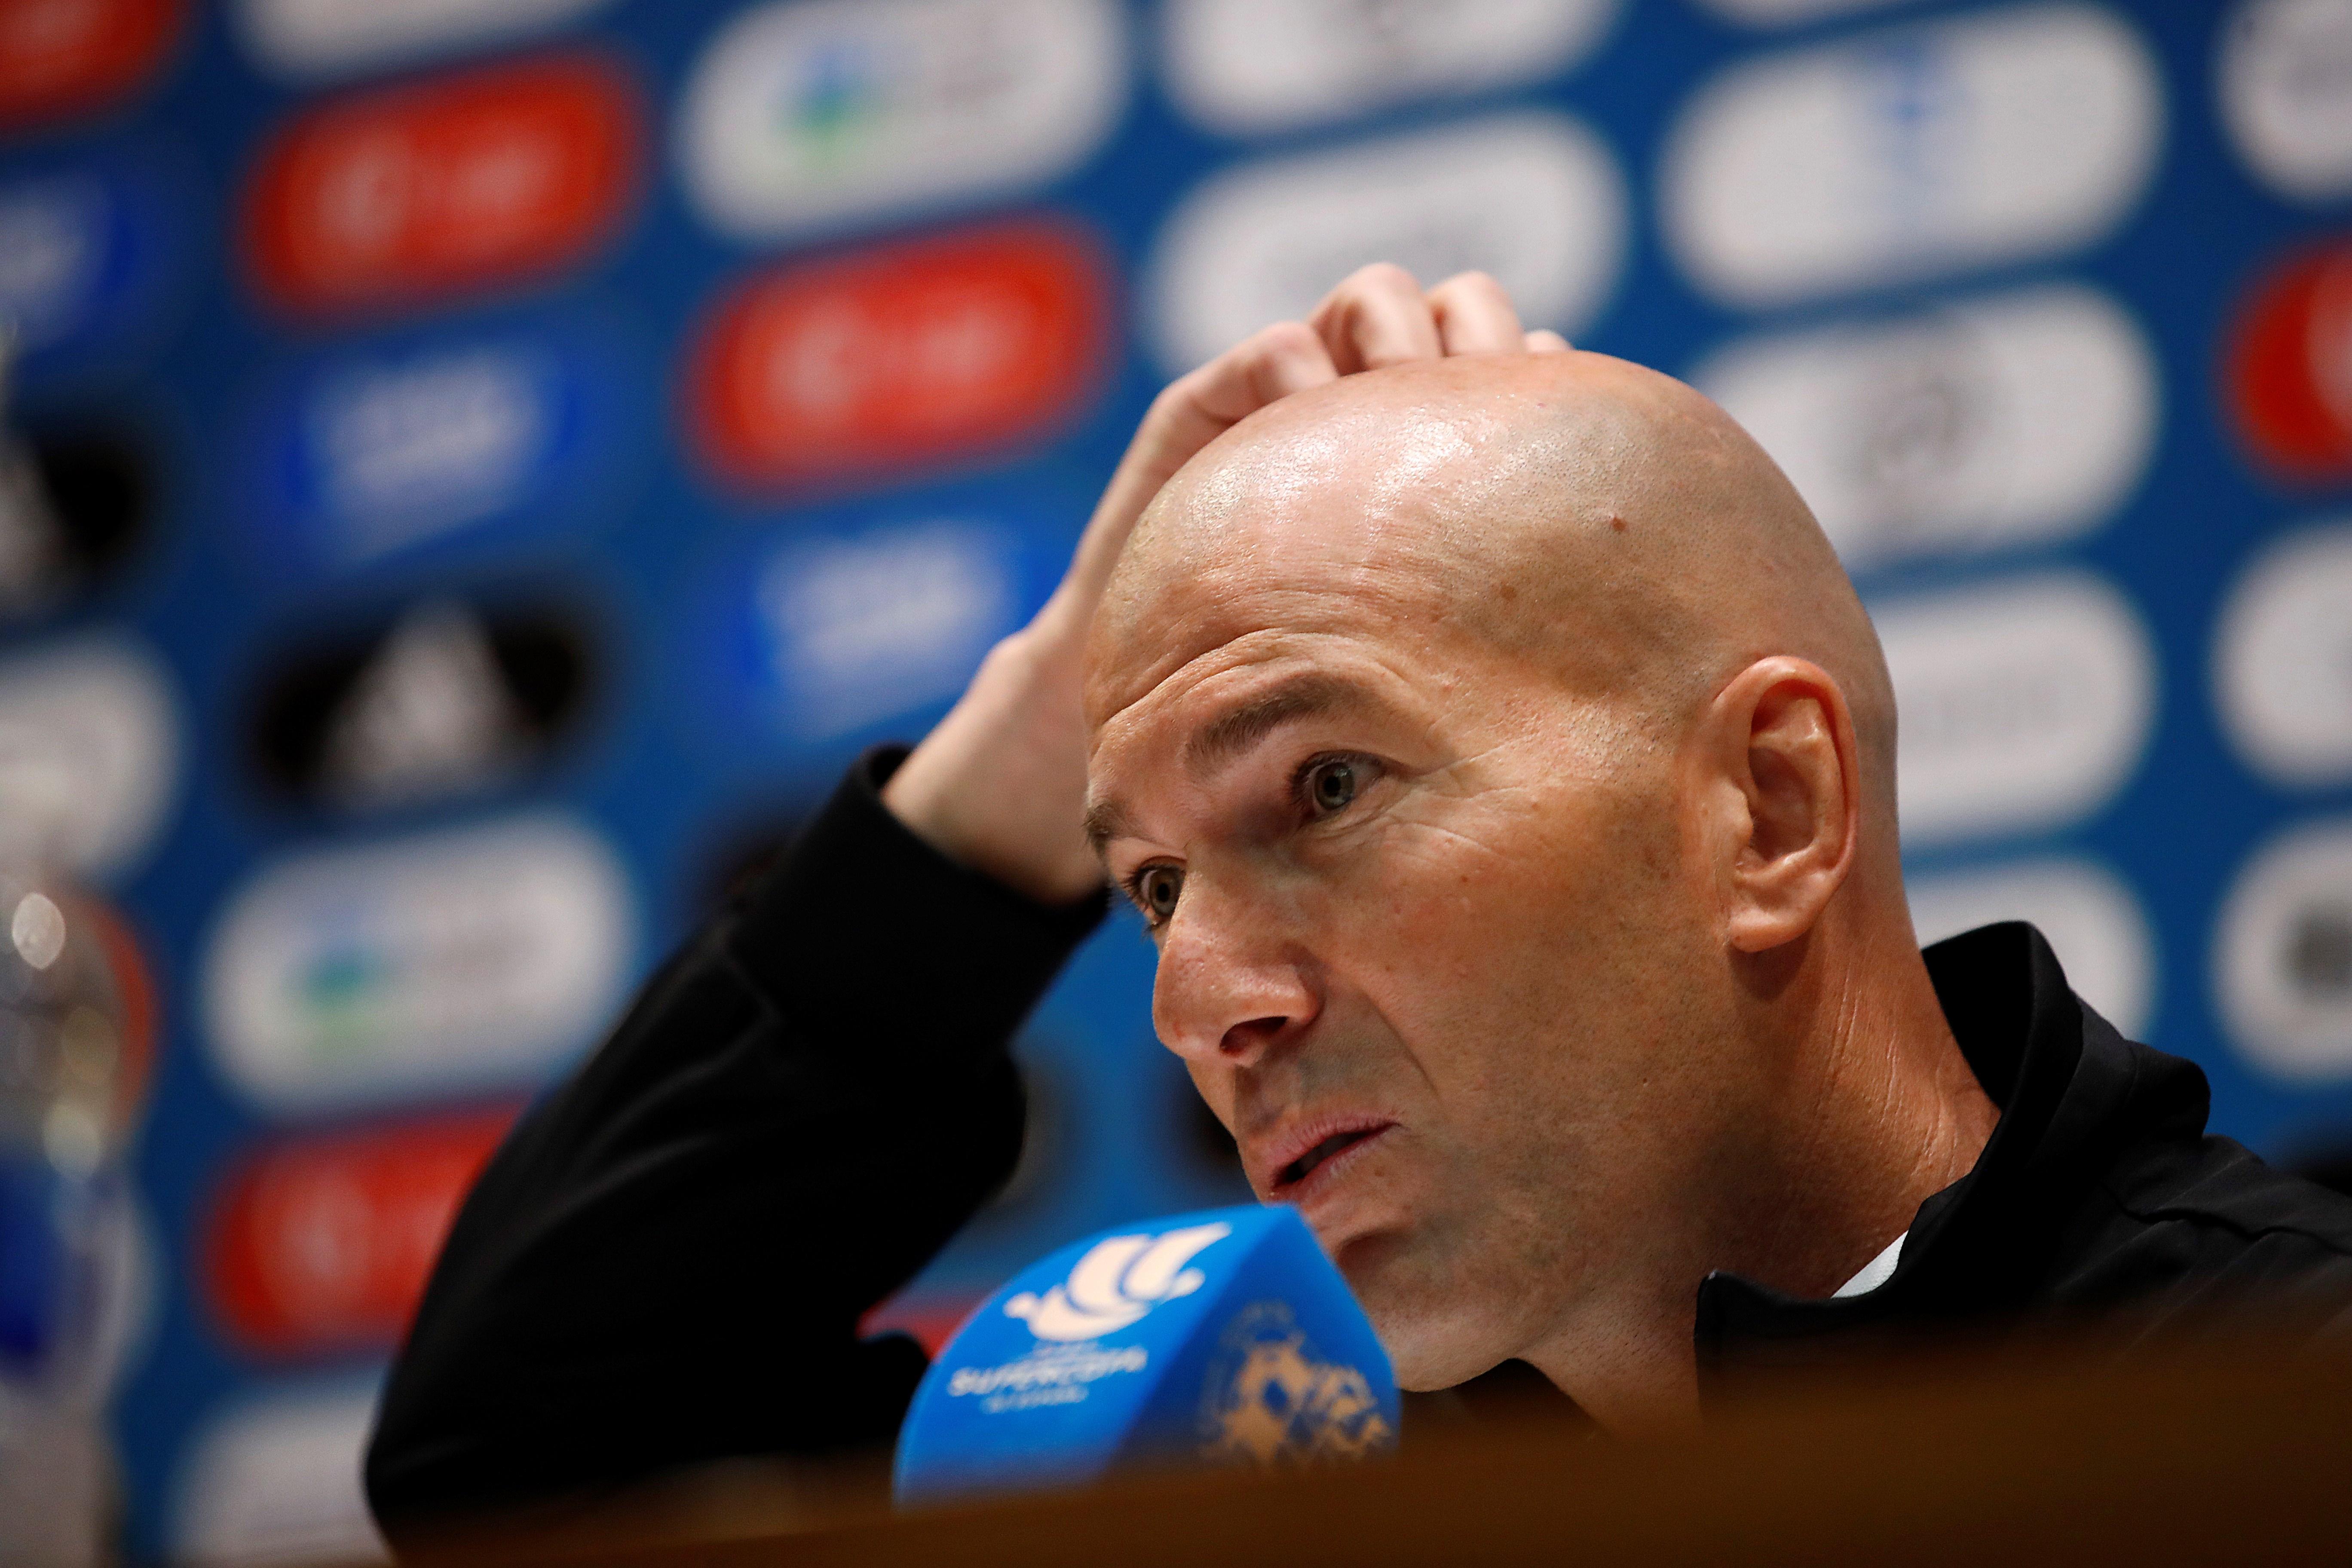 D'intocable de Zidane a sentenciat per Ancelotti, que ja ha comunicat que no el vol en el Reial Madrid